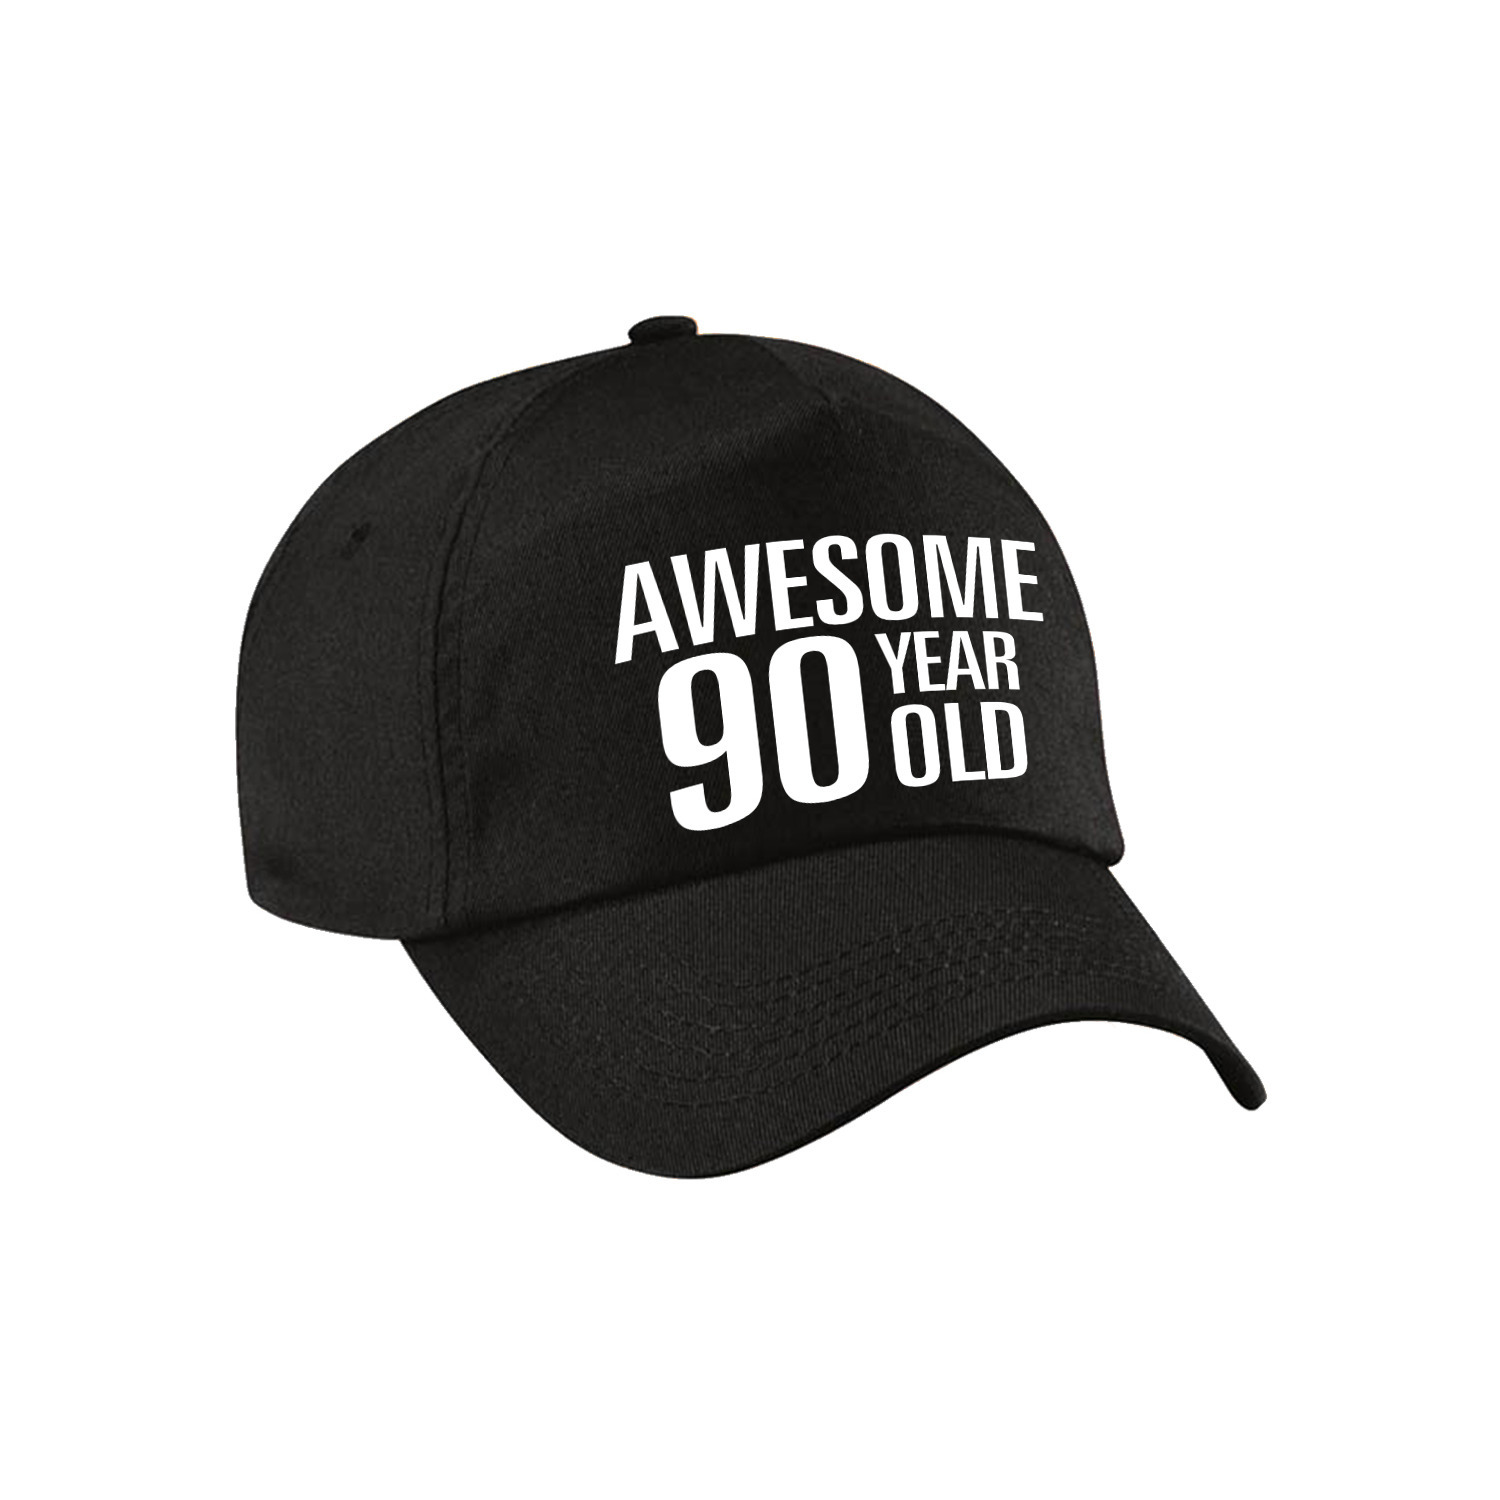 Awesome 90 year old verjaardag pet-cap zwart voor dames en heren